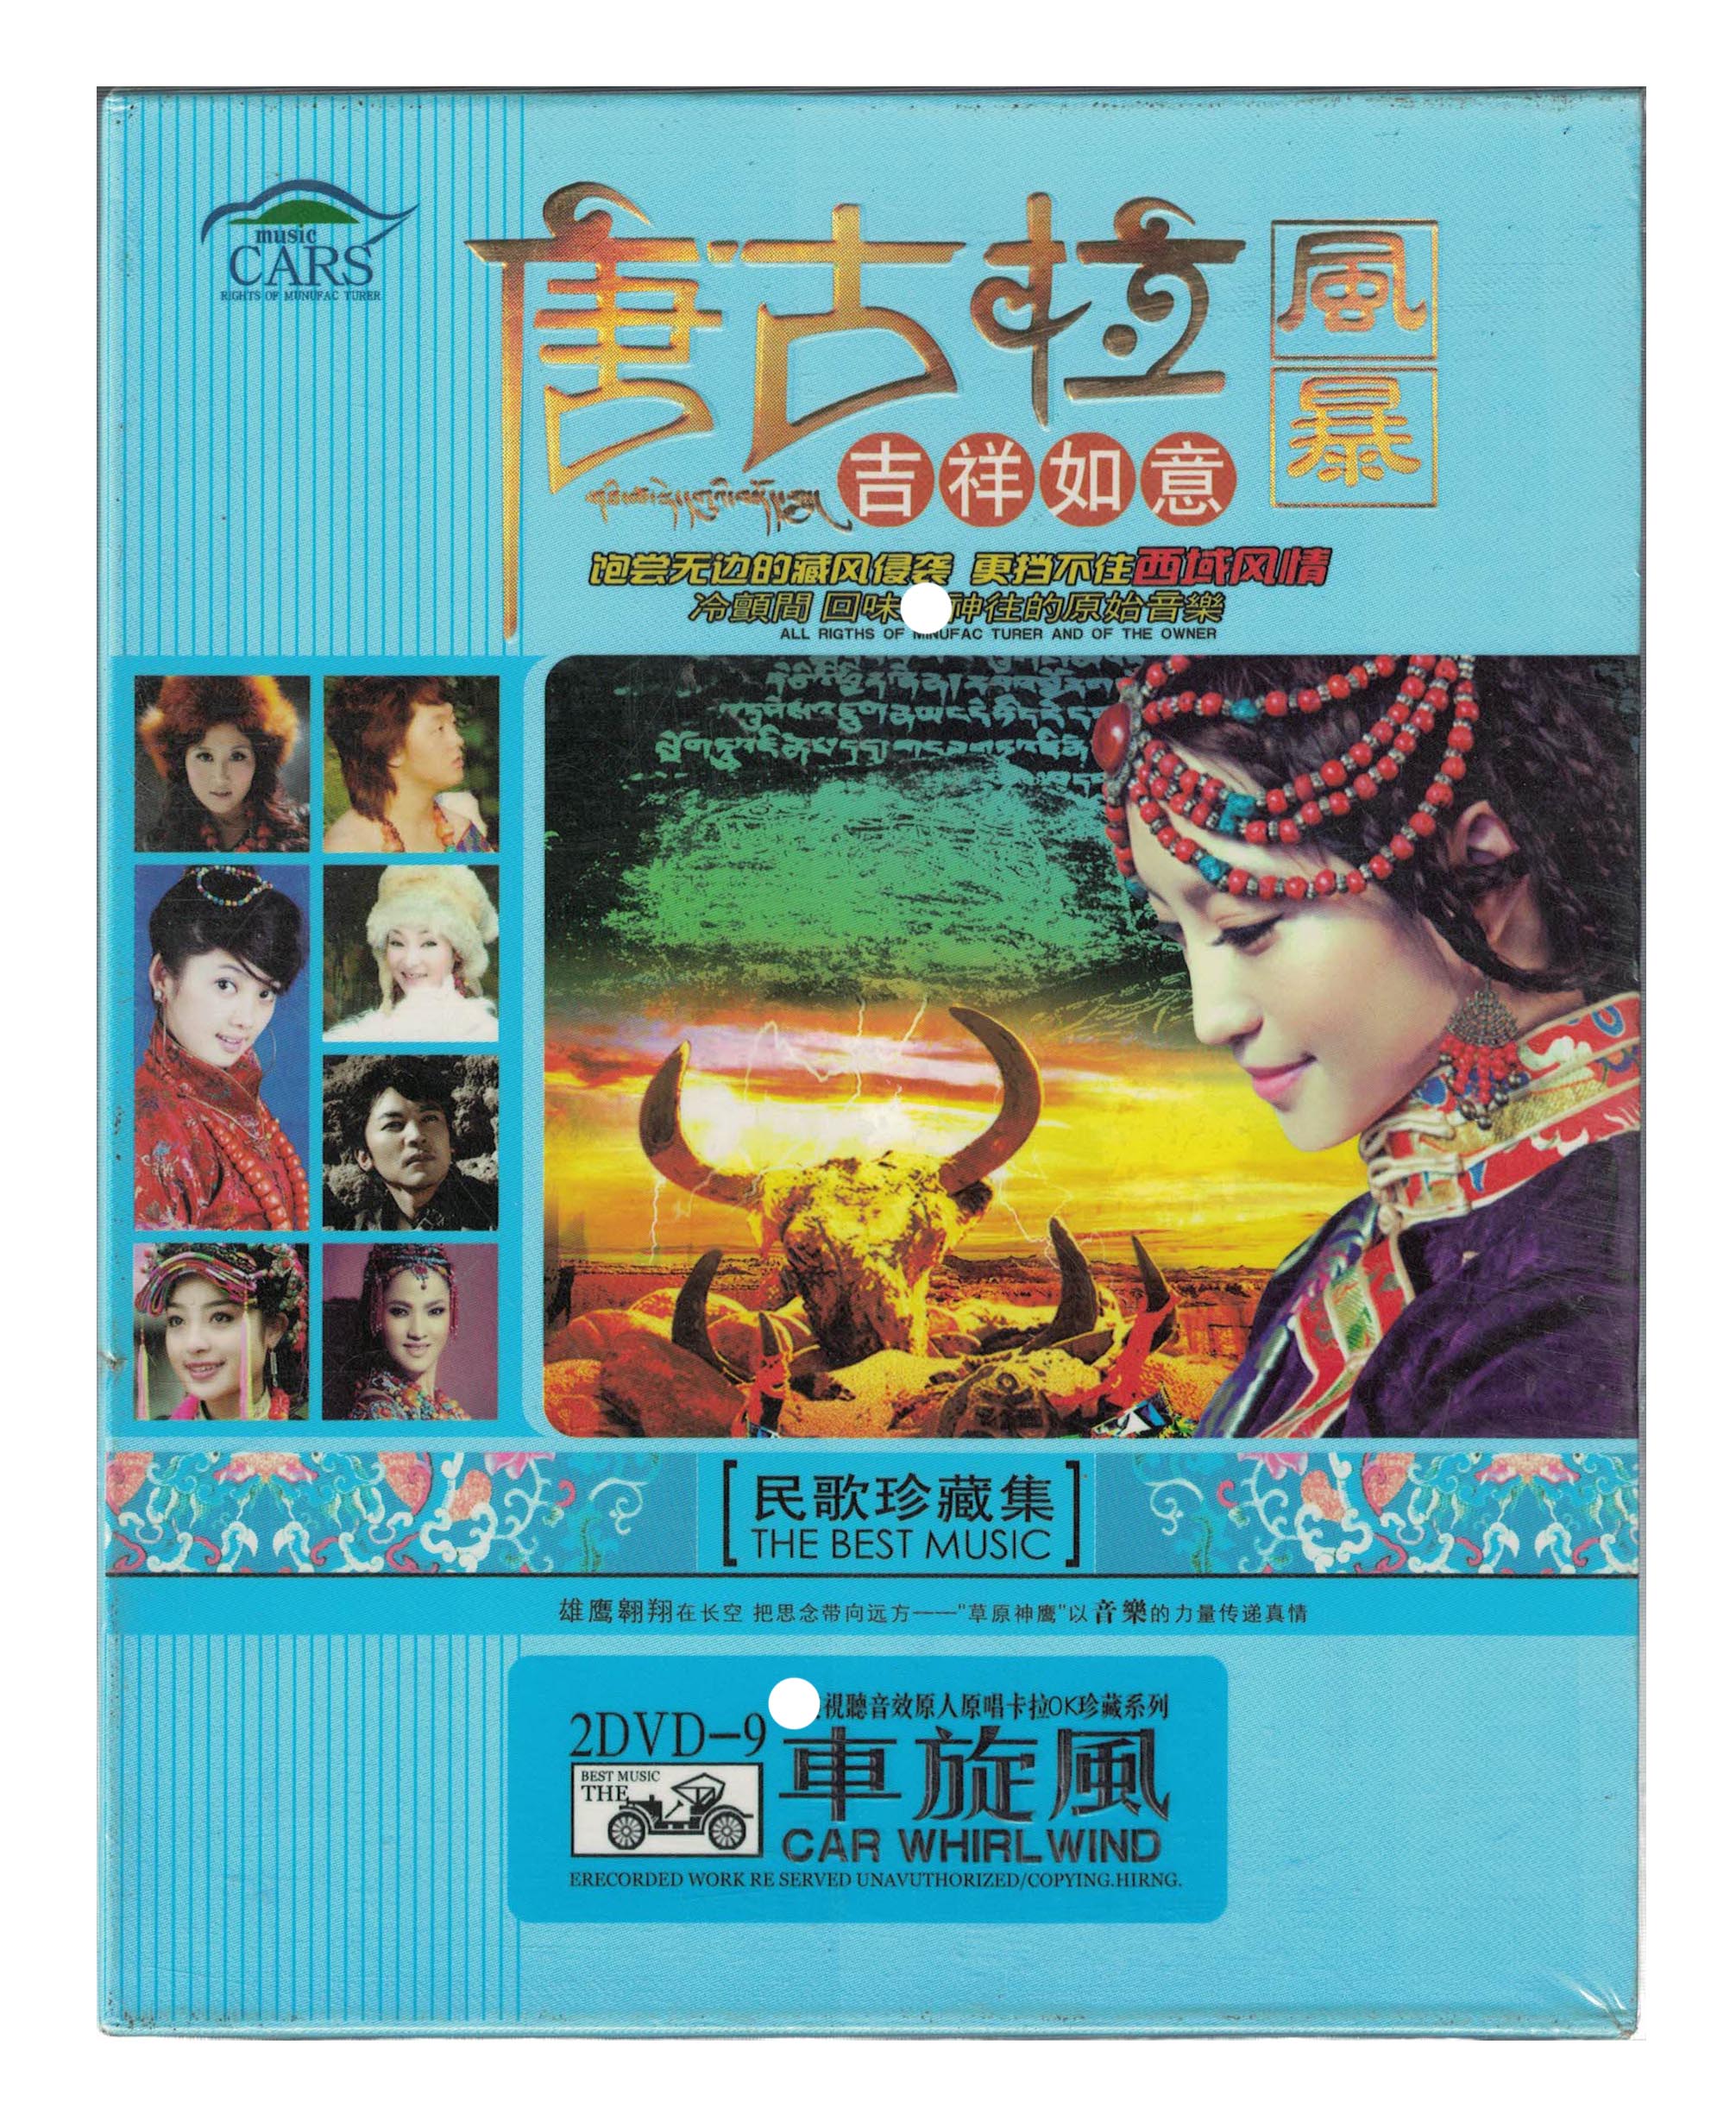 唐古拉风暴吉祥如意dvd视频音乐光碟车旋风西域风情藏族民歌曲